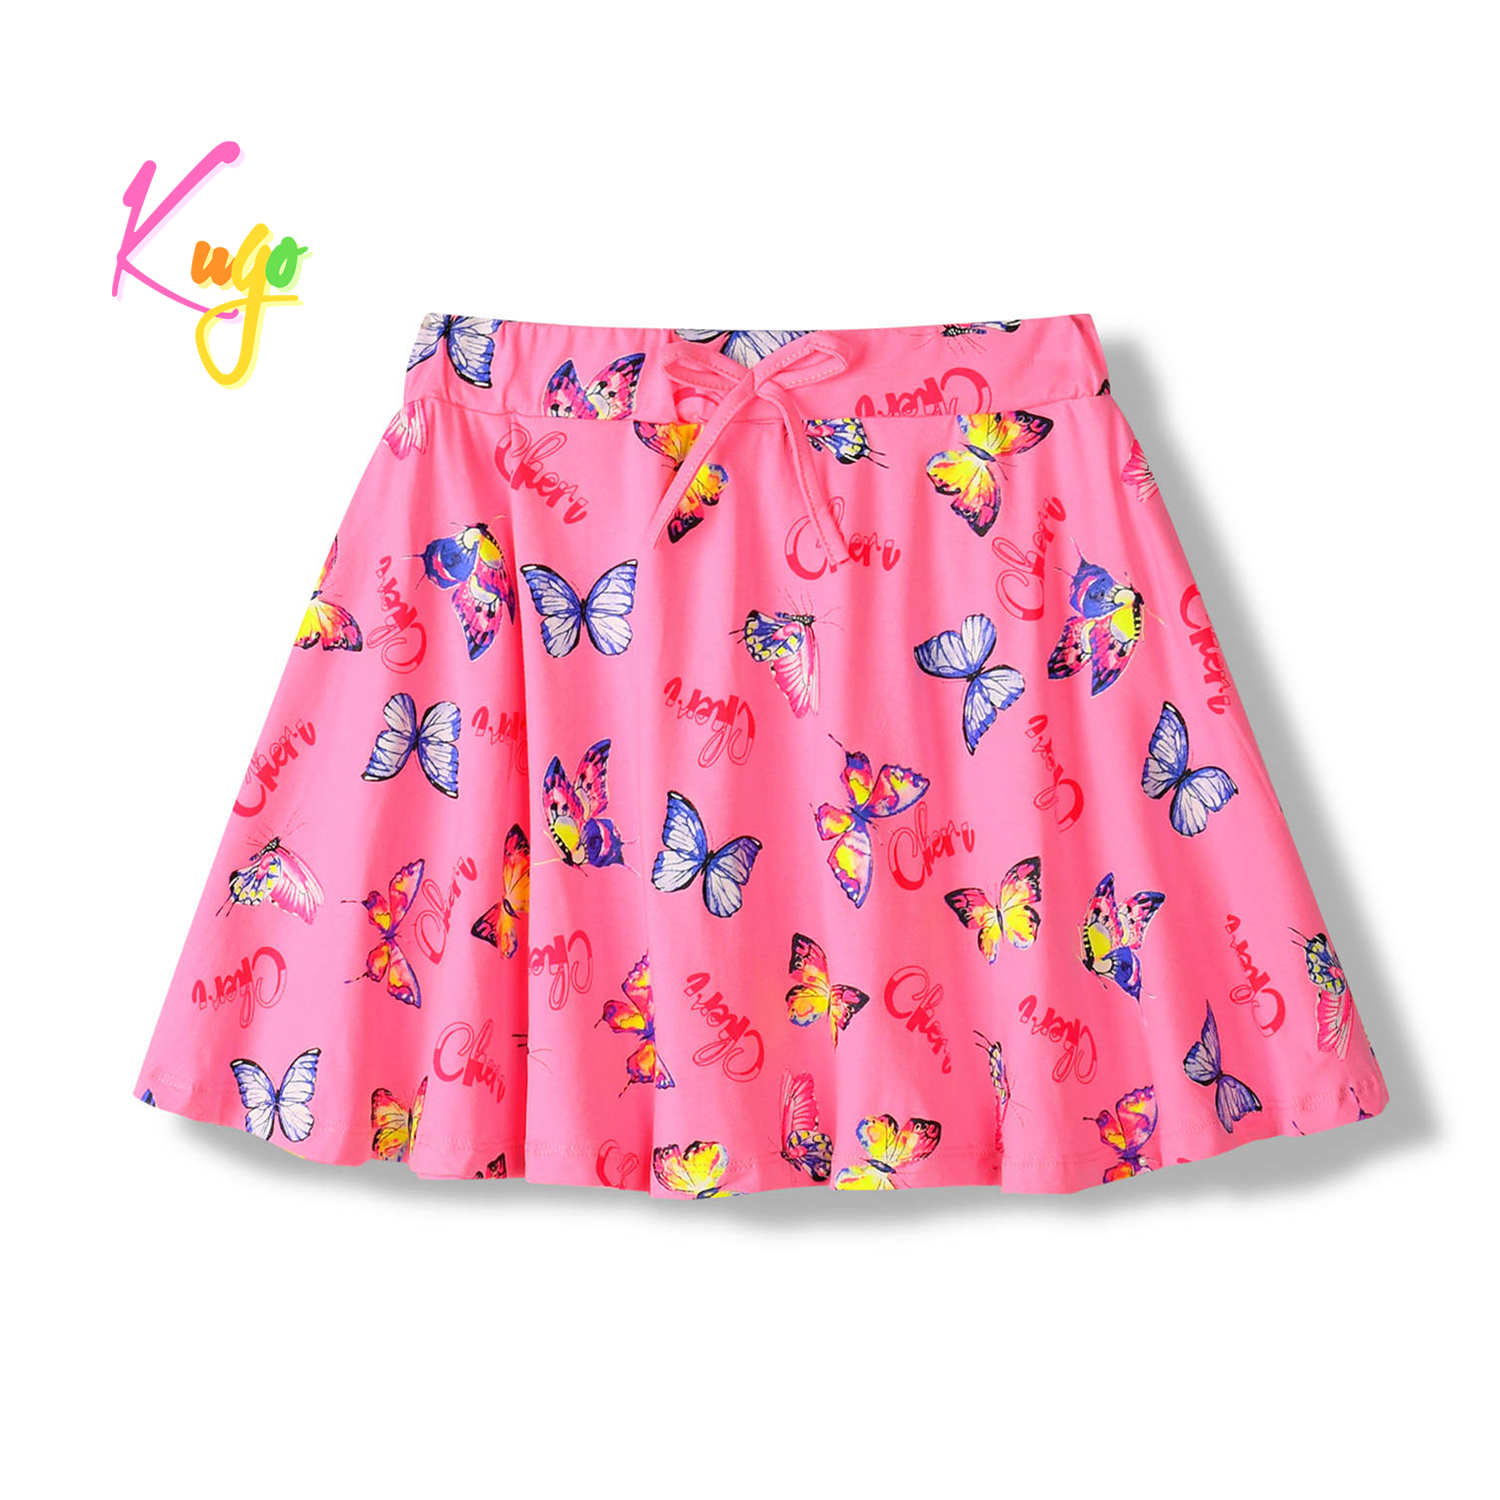 Dívčí sukně - KUGO HS9283, sytě růžová Barva: Růžová, Velikost: 140